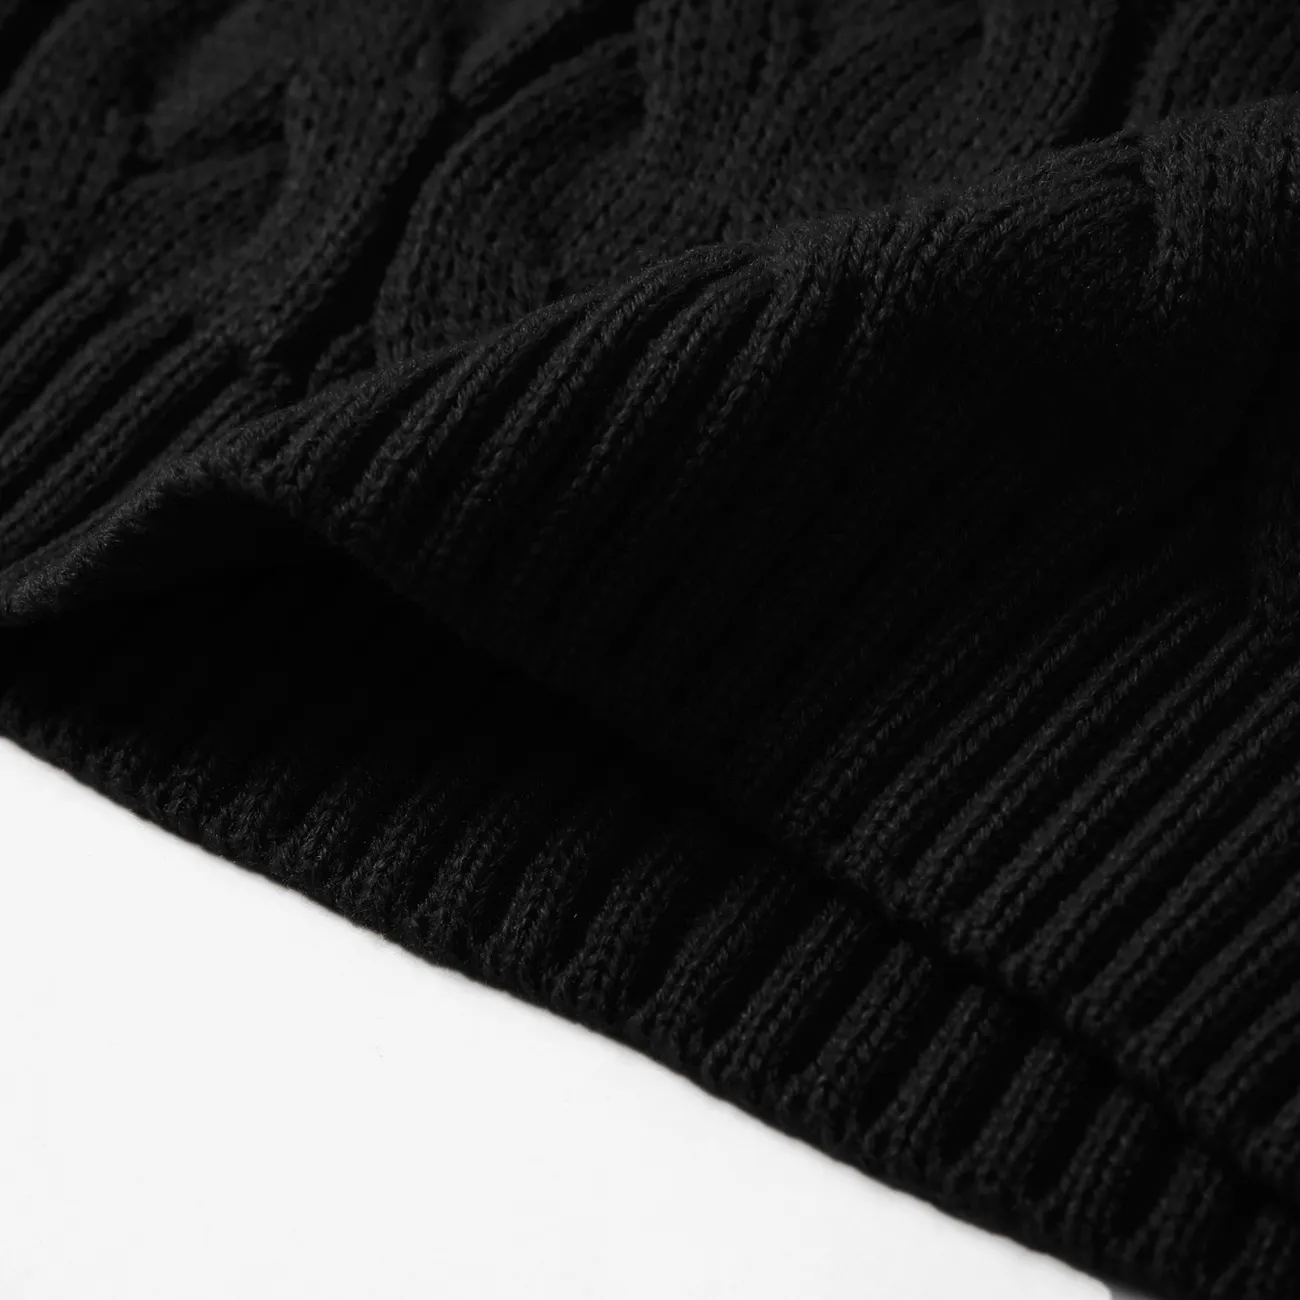 Toddler Girl/Boy Solid Cable Knit Turtleneck Sweater Black big image 1